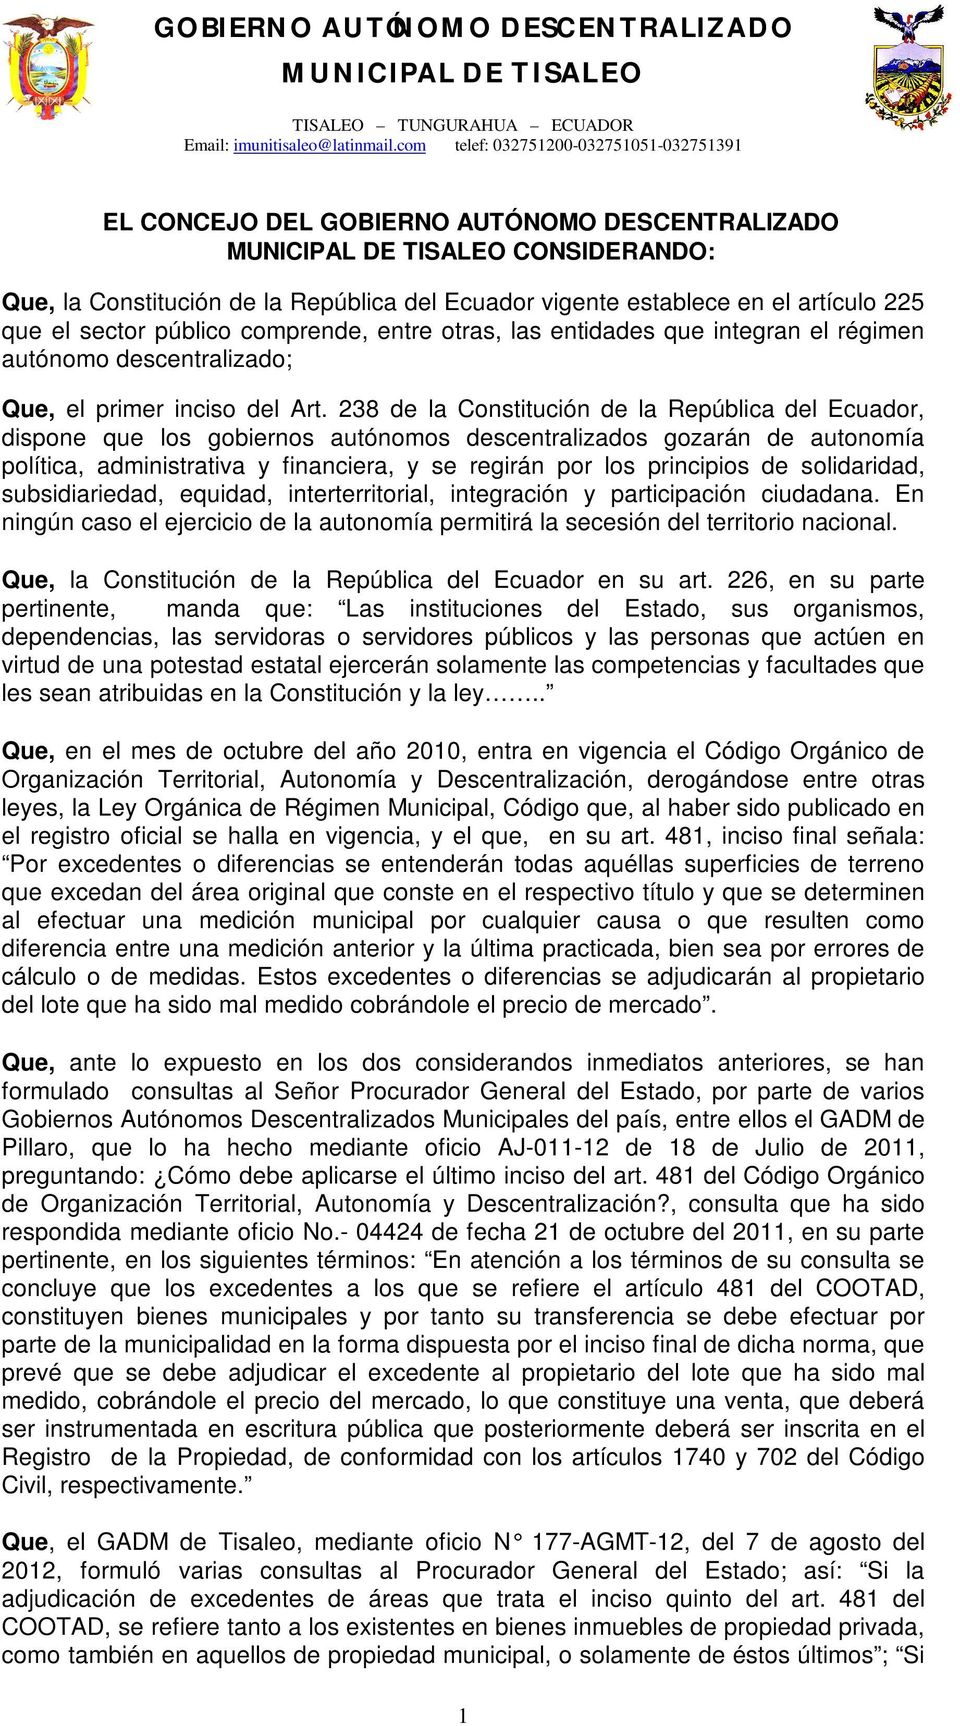 238 de la Constitución de la República del Ecuador, dispone que los gobiernos autónomos descentralizados gozarán de autonomía política, administrativa y financiera, y se regirán por los principios de